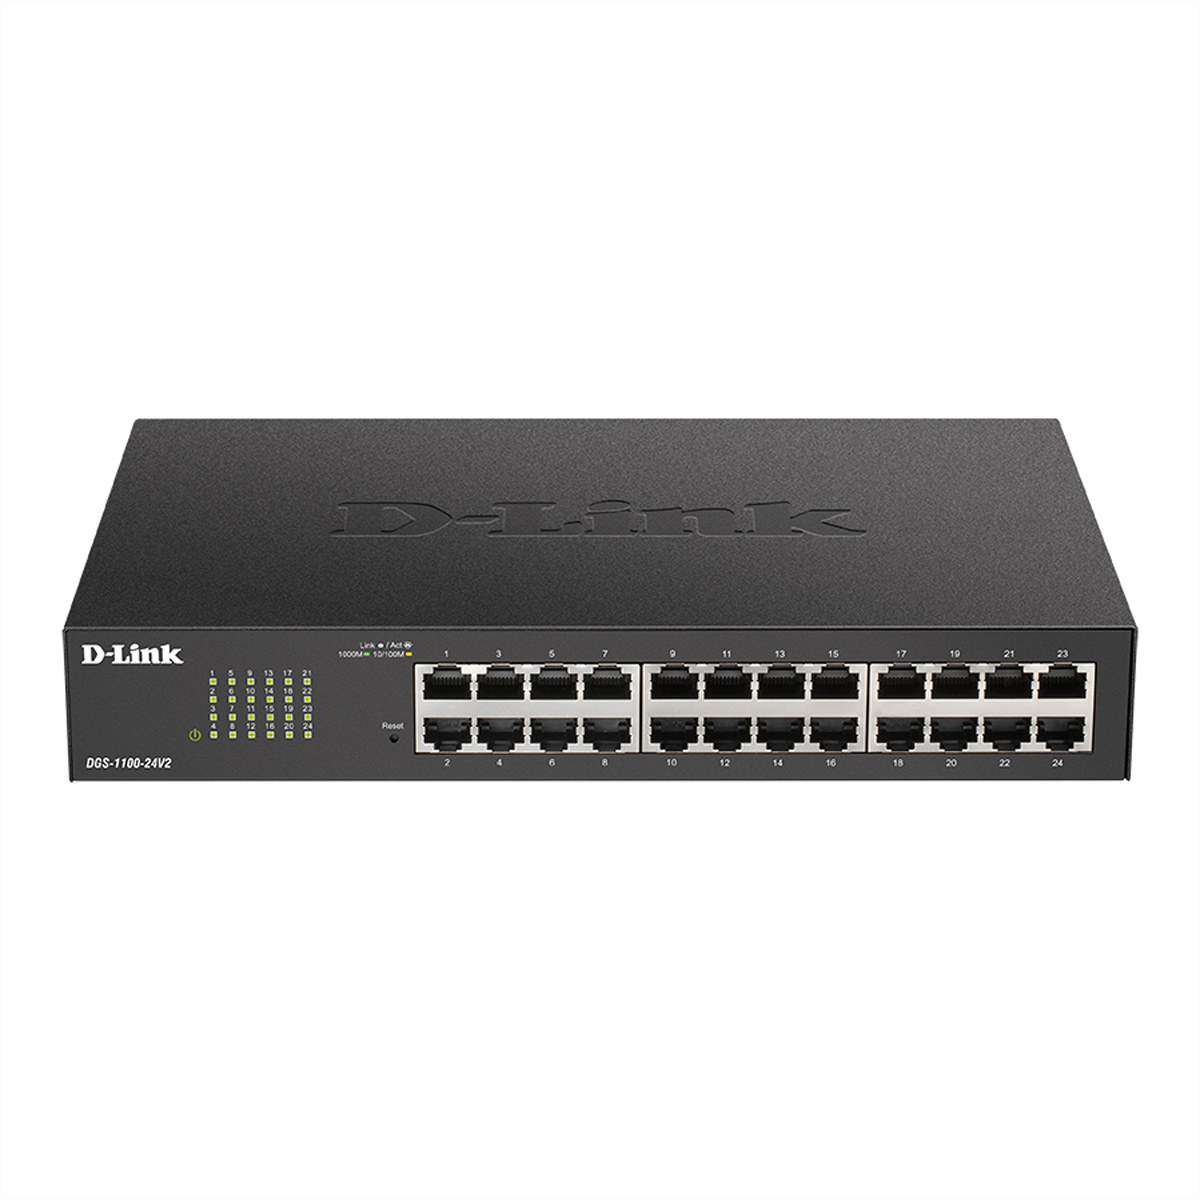 D-LINK DGS-1100-24V2 24-Port Switch Gigabit Ethernet Switch